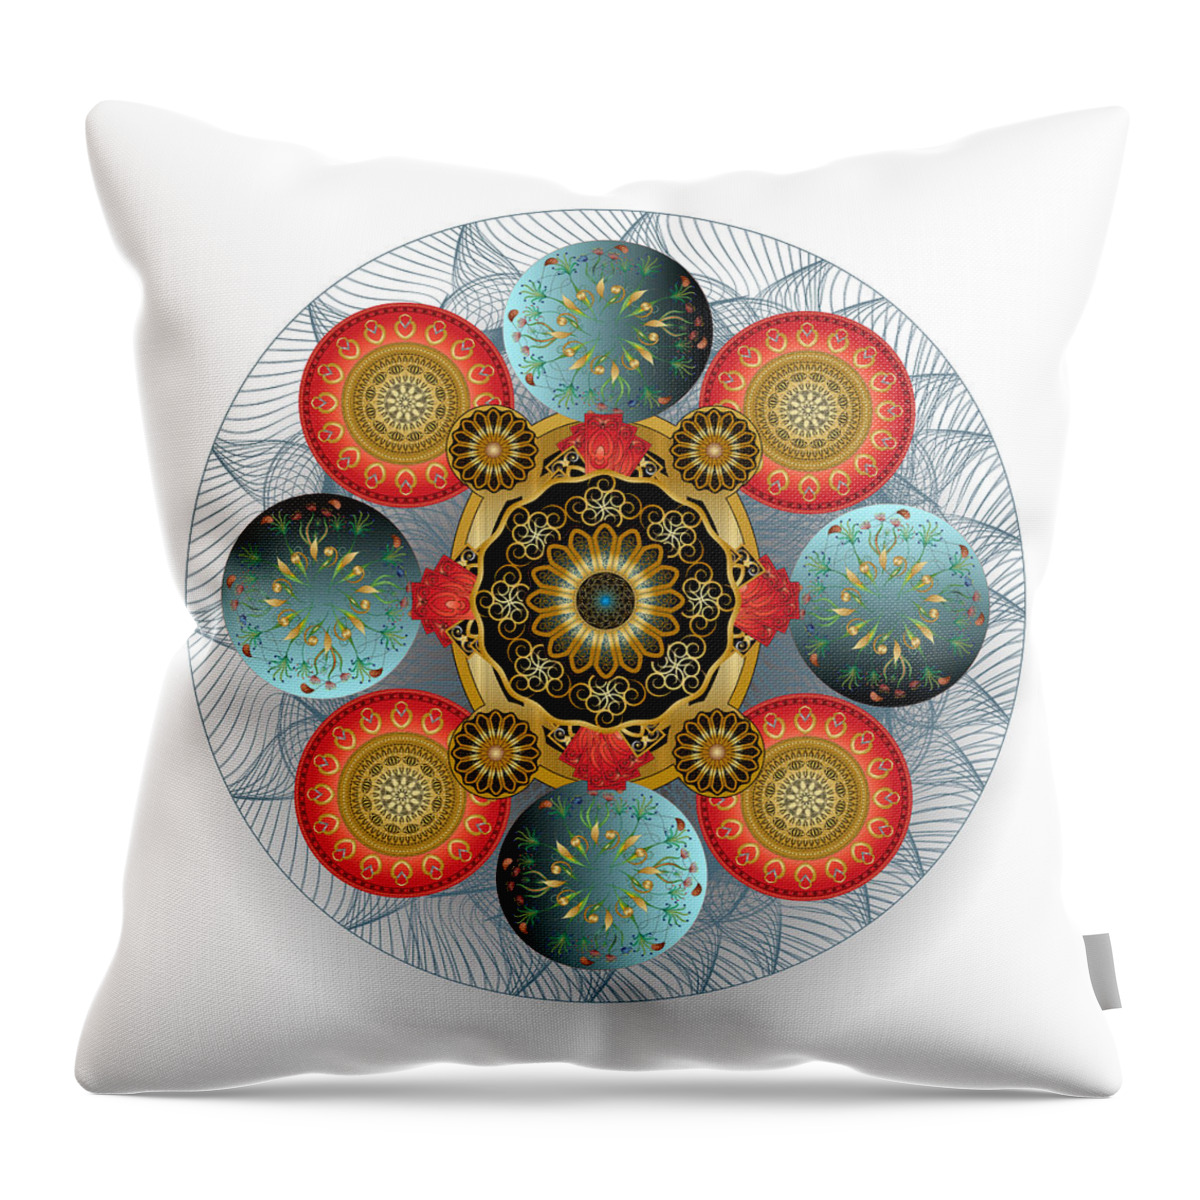 Mandala Throw Pillow featuring the digital art Circulosity No 3415 by Alan Bennington